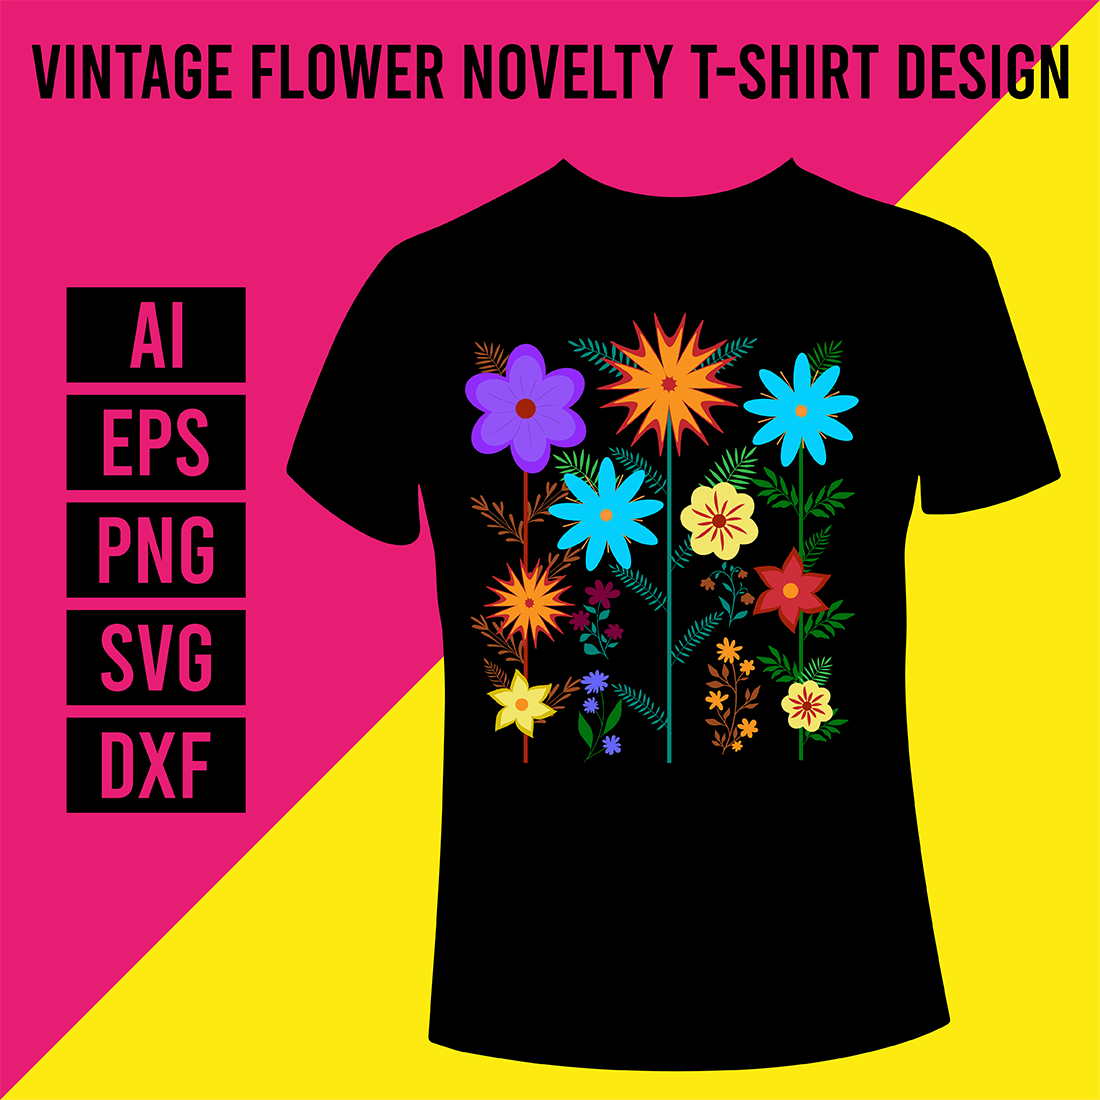 Vintage Flower Novelty T-Shirt Design cover image.